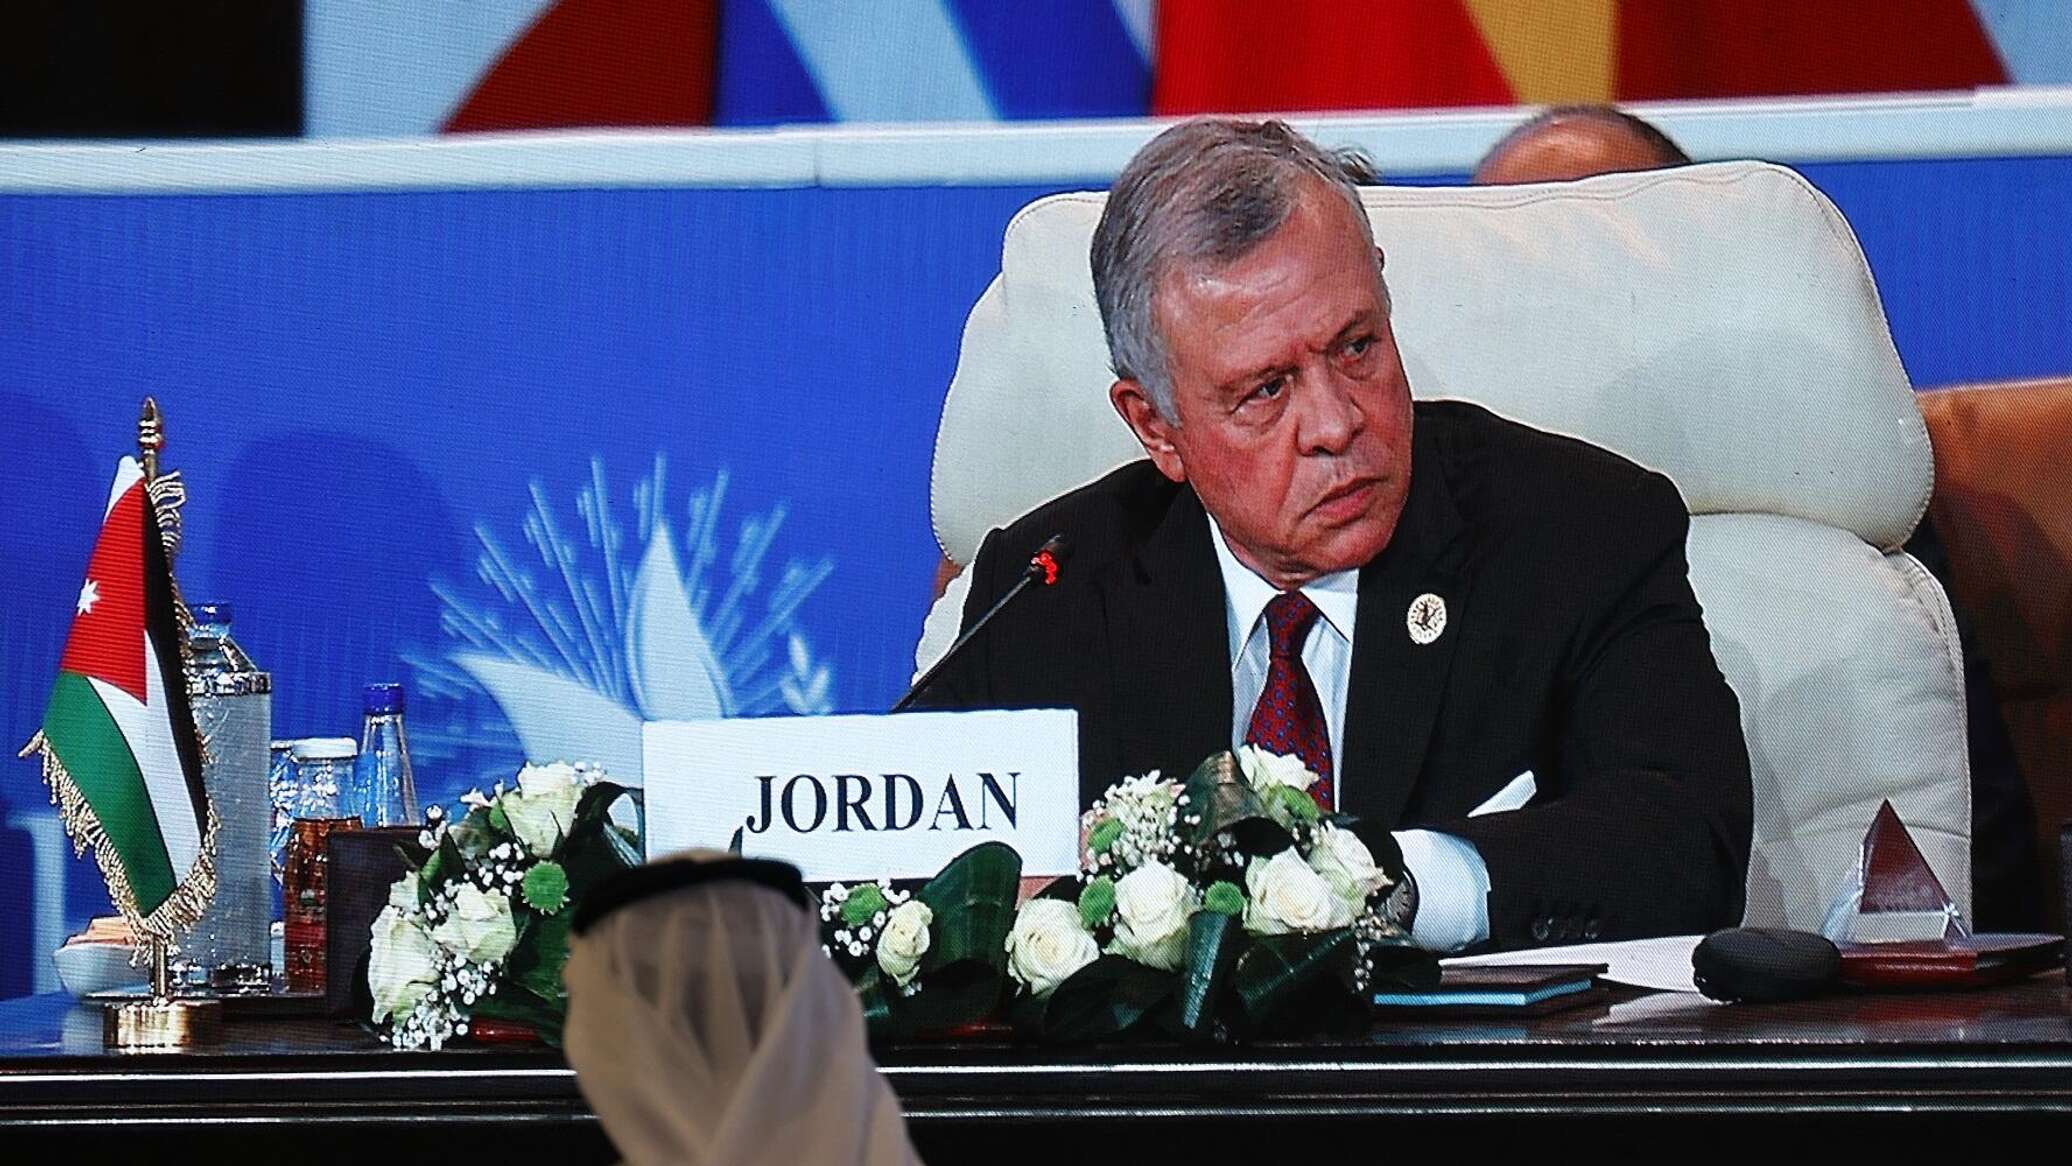 ملك الأردن: على إسرائيل أن تدرك أنه لا يوجد حل عسكري لمخاوفها الأمنية